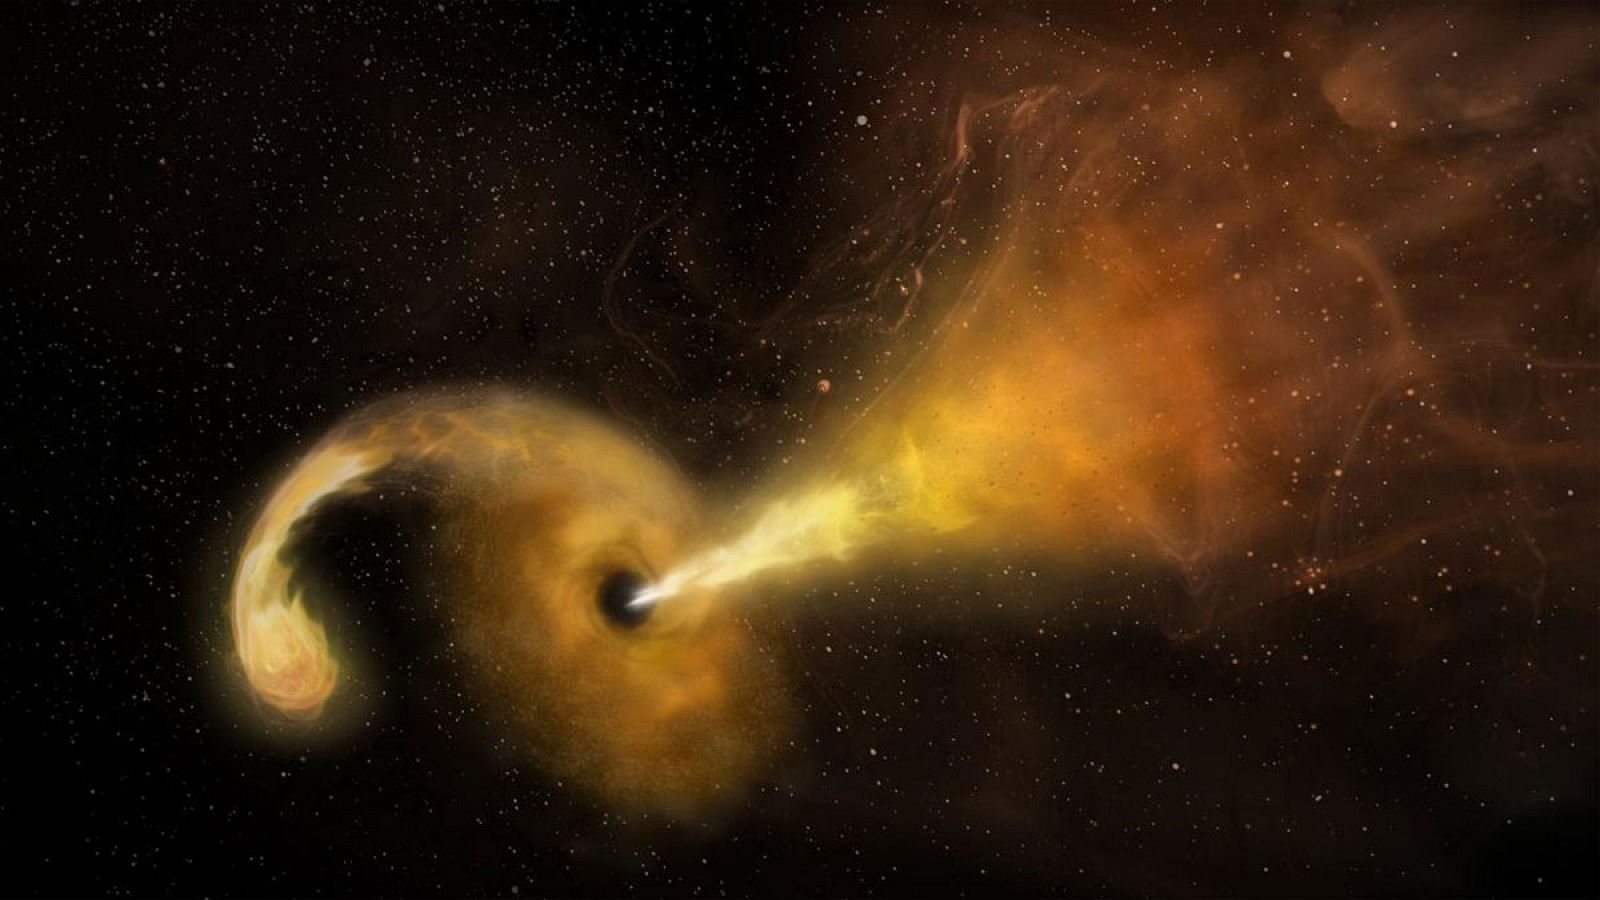 Representación del chorro de material expulsado por un agujero negro supermasivo tras destruir una estrella.